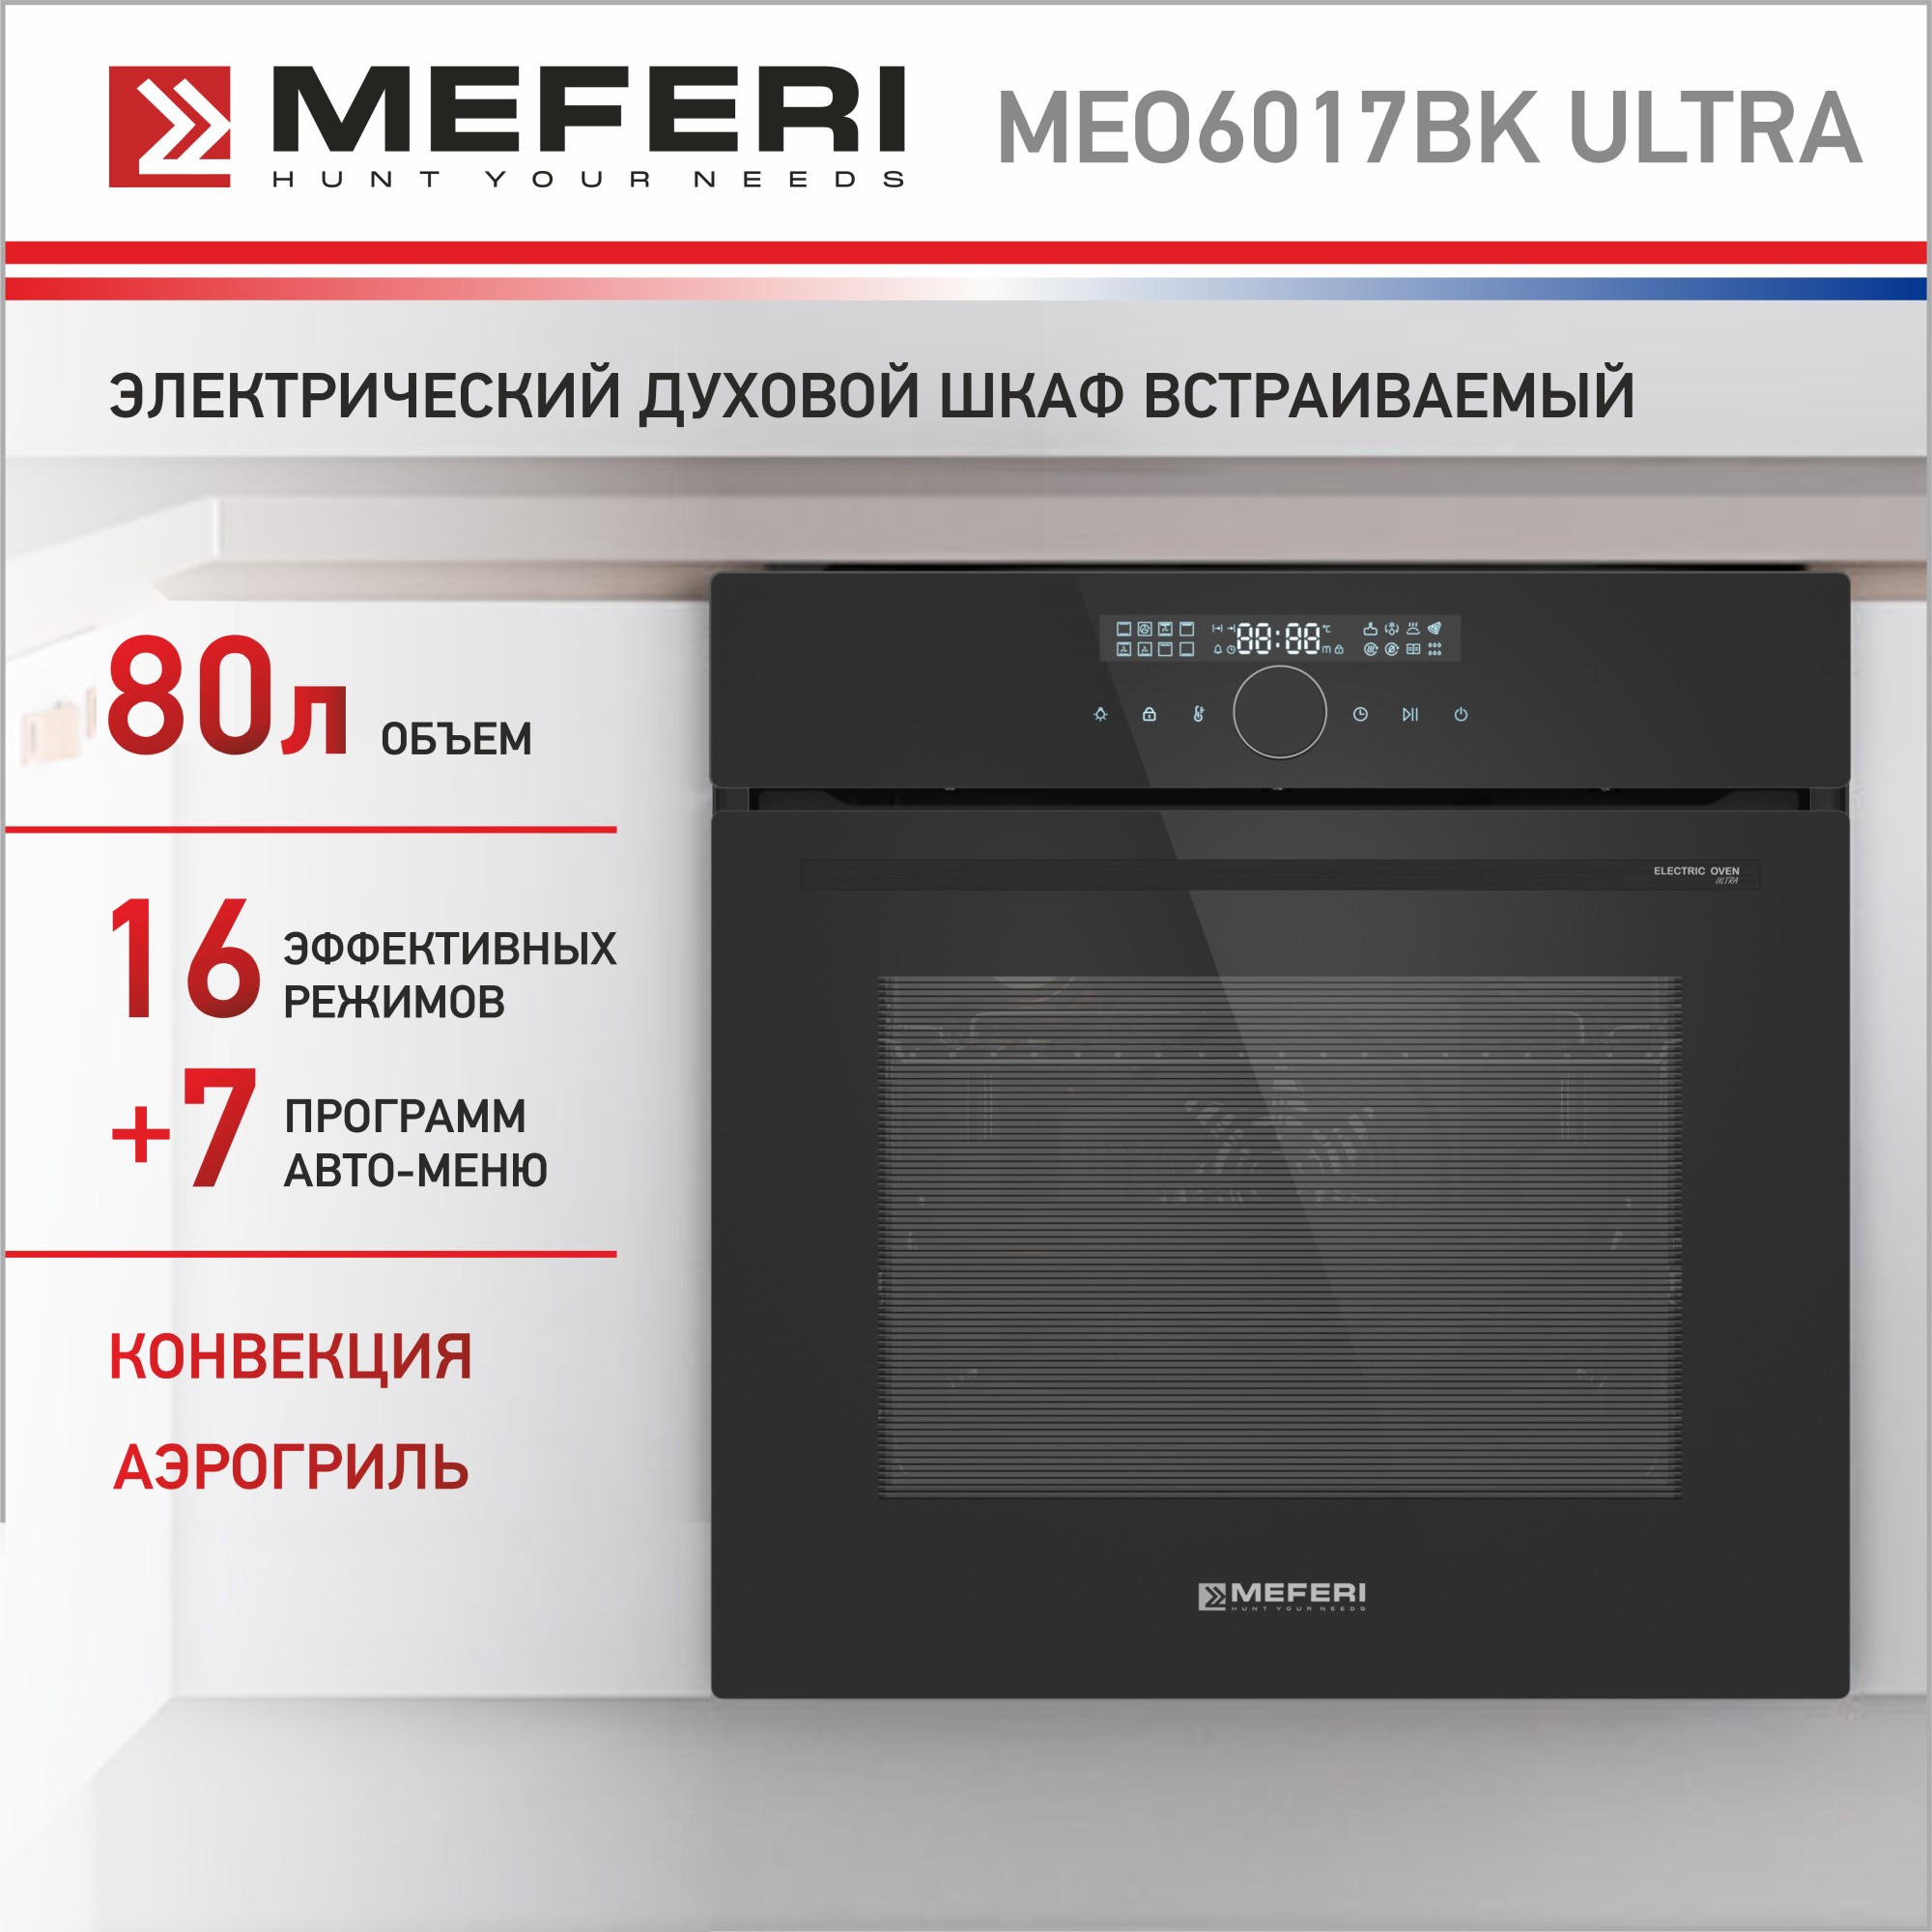 Электрический духовой шкаф MEFERI MEO6017BK ULTRA комплект обновления sculpfun s9 до s30 ultra 33 вт